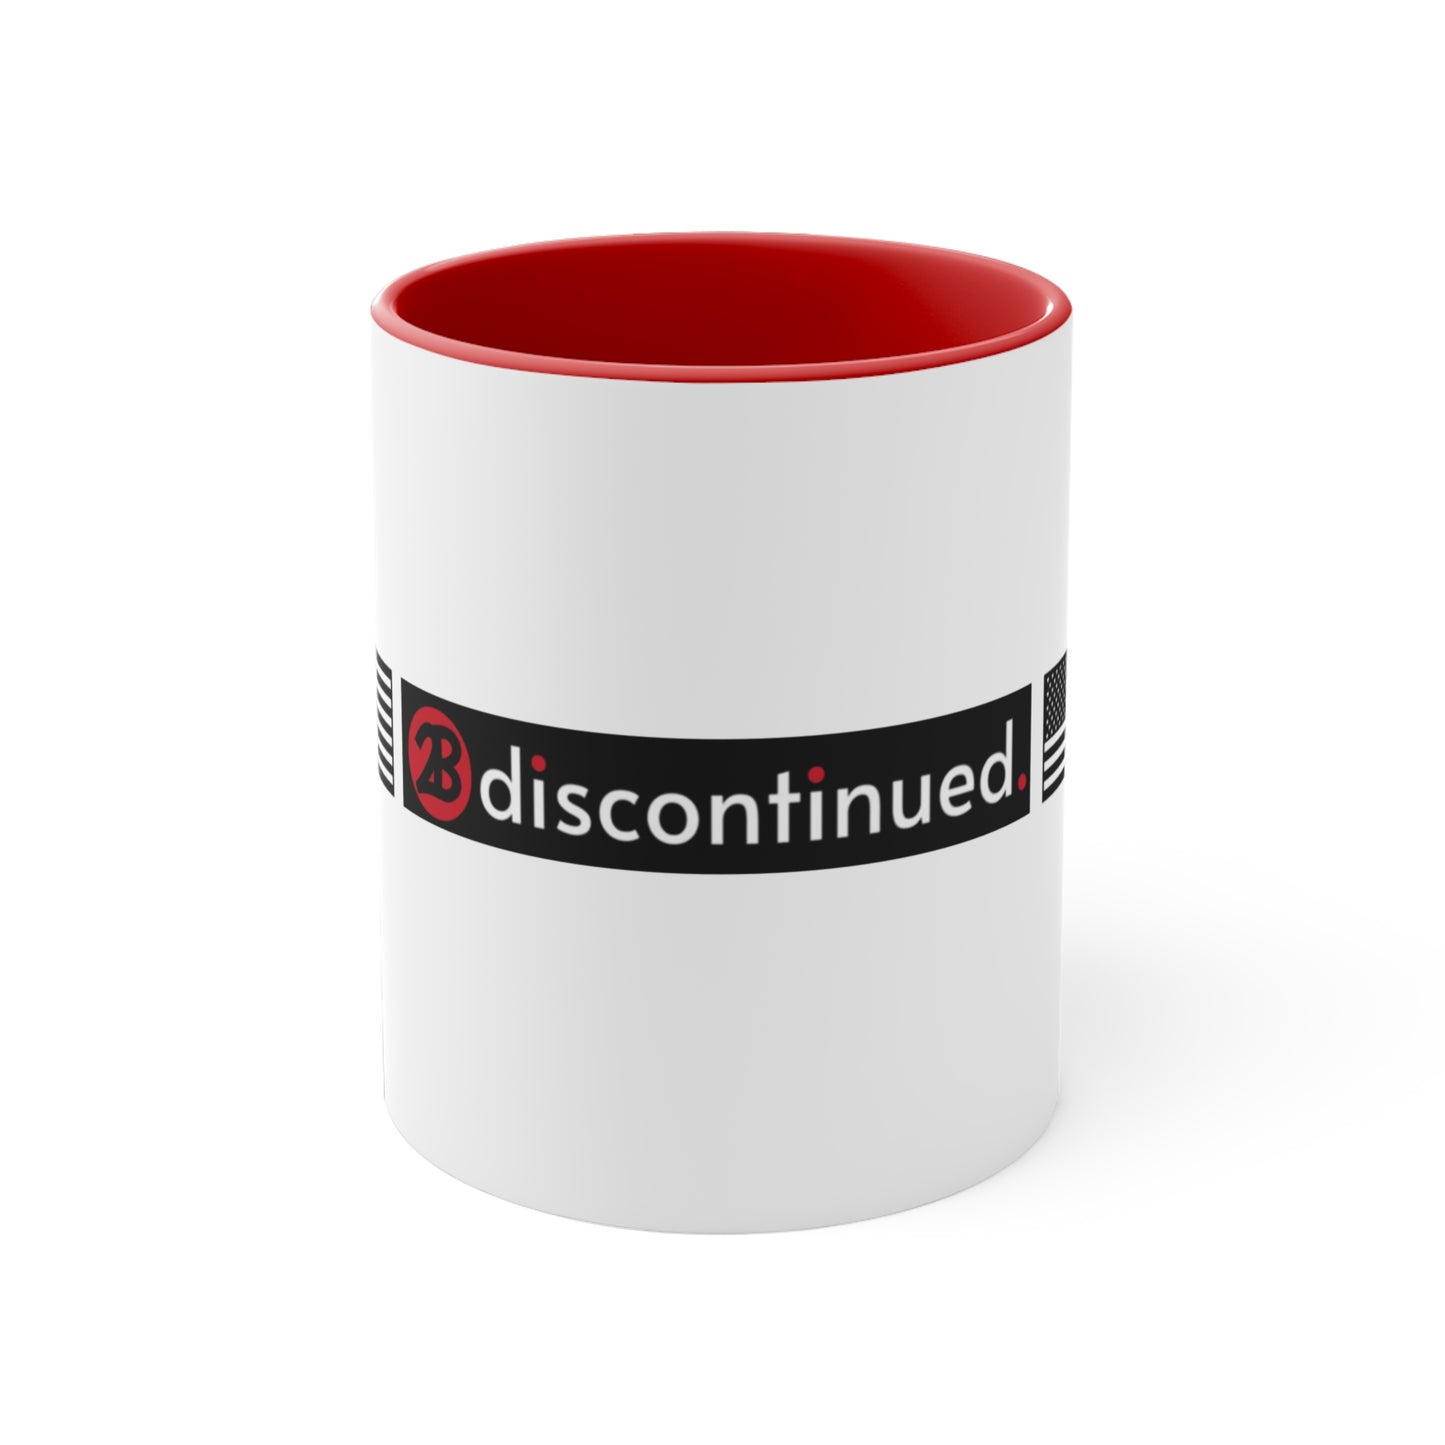 2Bdiscontinued. accent coffee mug, 11oz